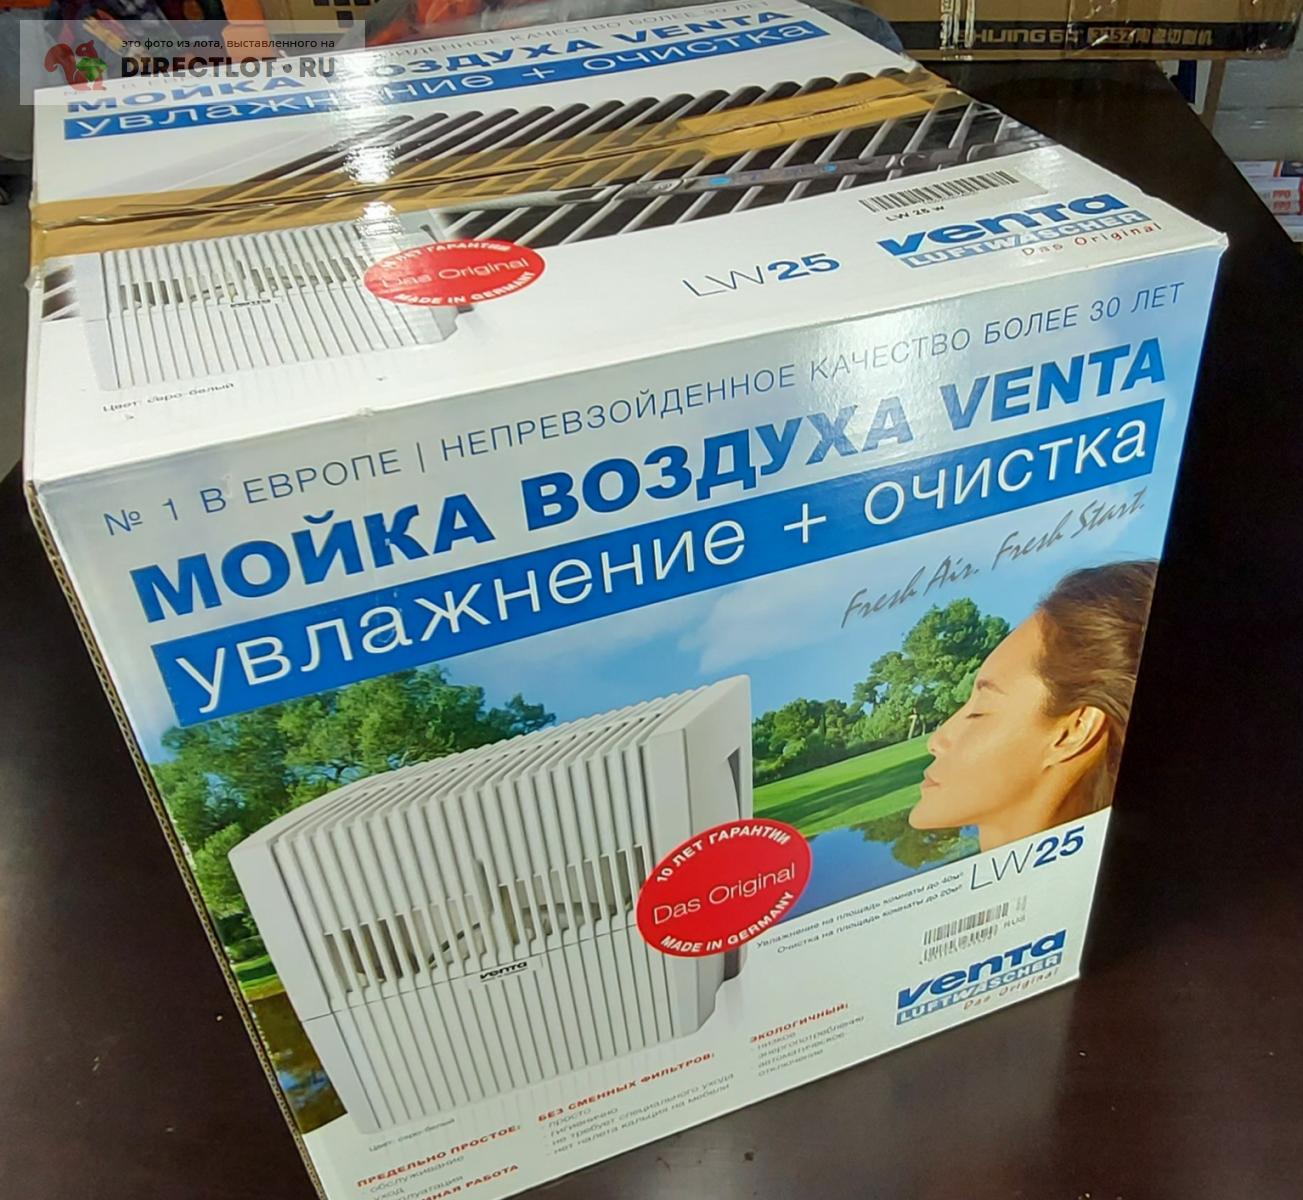  воздуха Venta LW25 белый 40 кв.м  в Домодедово цена 7000 Р .